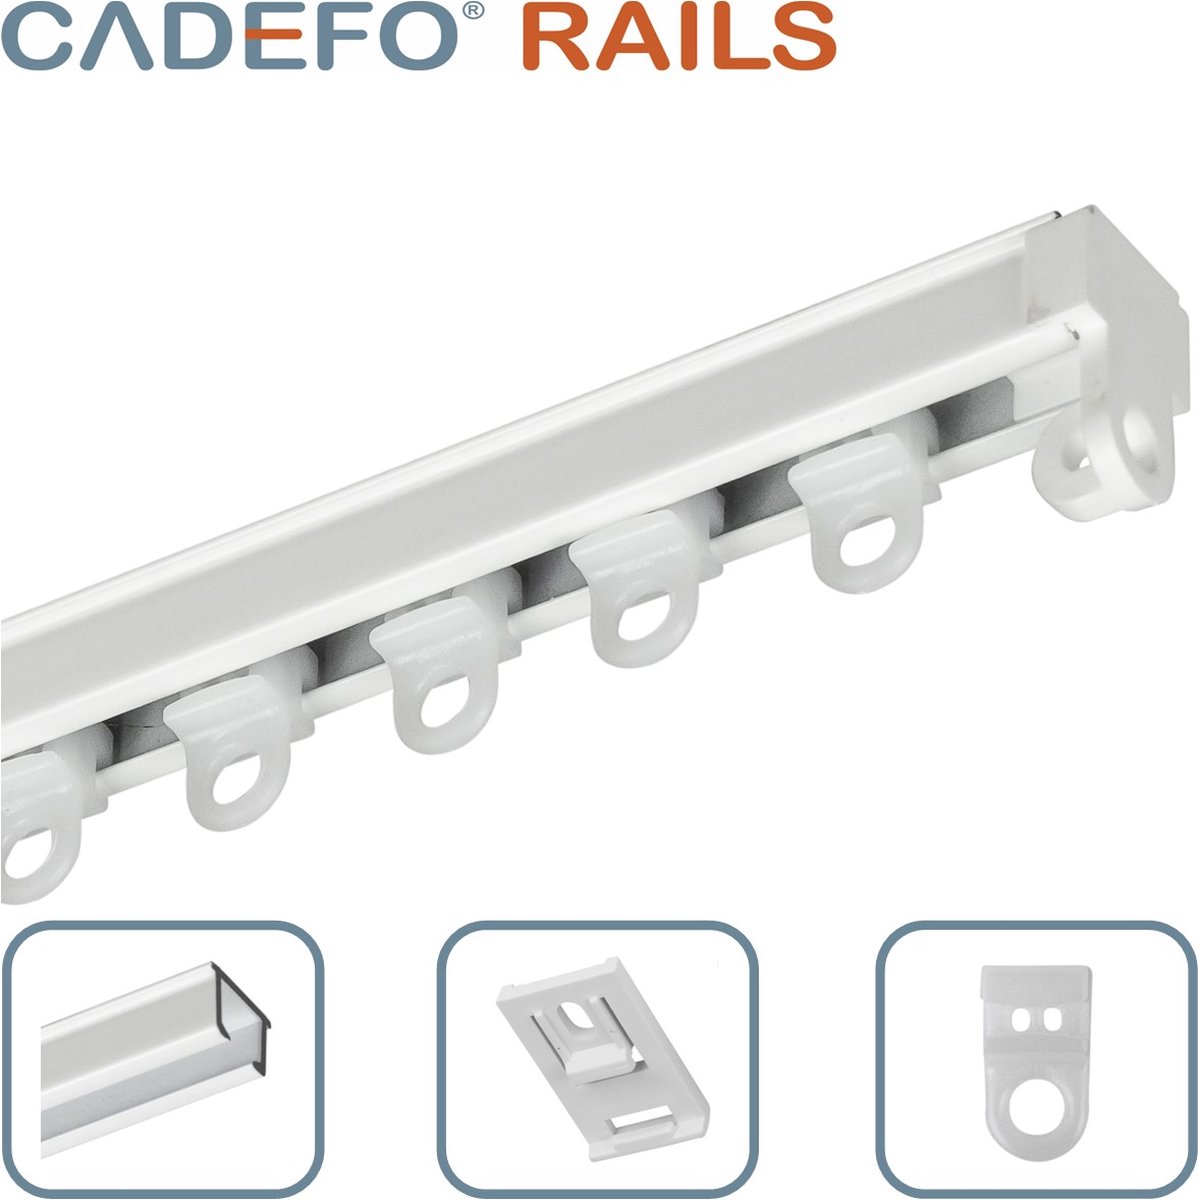 CADEFO RAILS (201 - 250 cm) Gordijnrails - Compleet op maat! - UIT 1 STUK - Leverbaar tot 6 meter - Plafondbevestiging - Lengte 232 cm